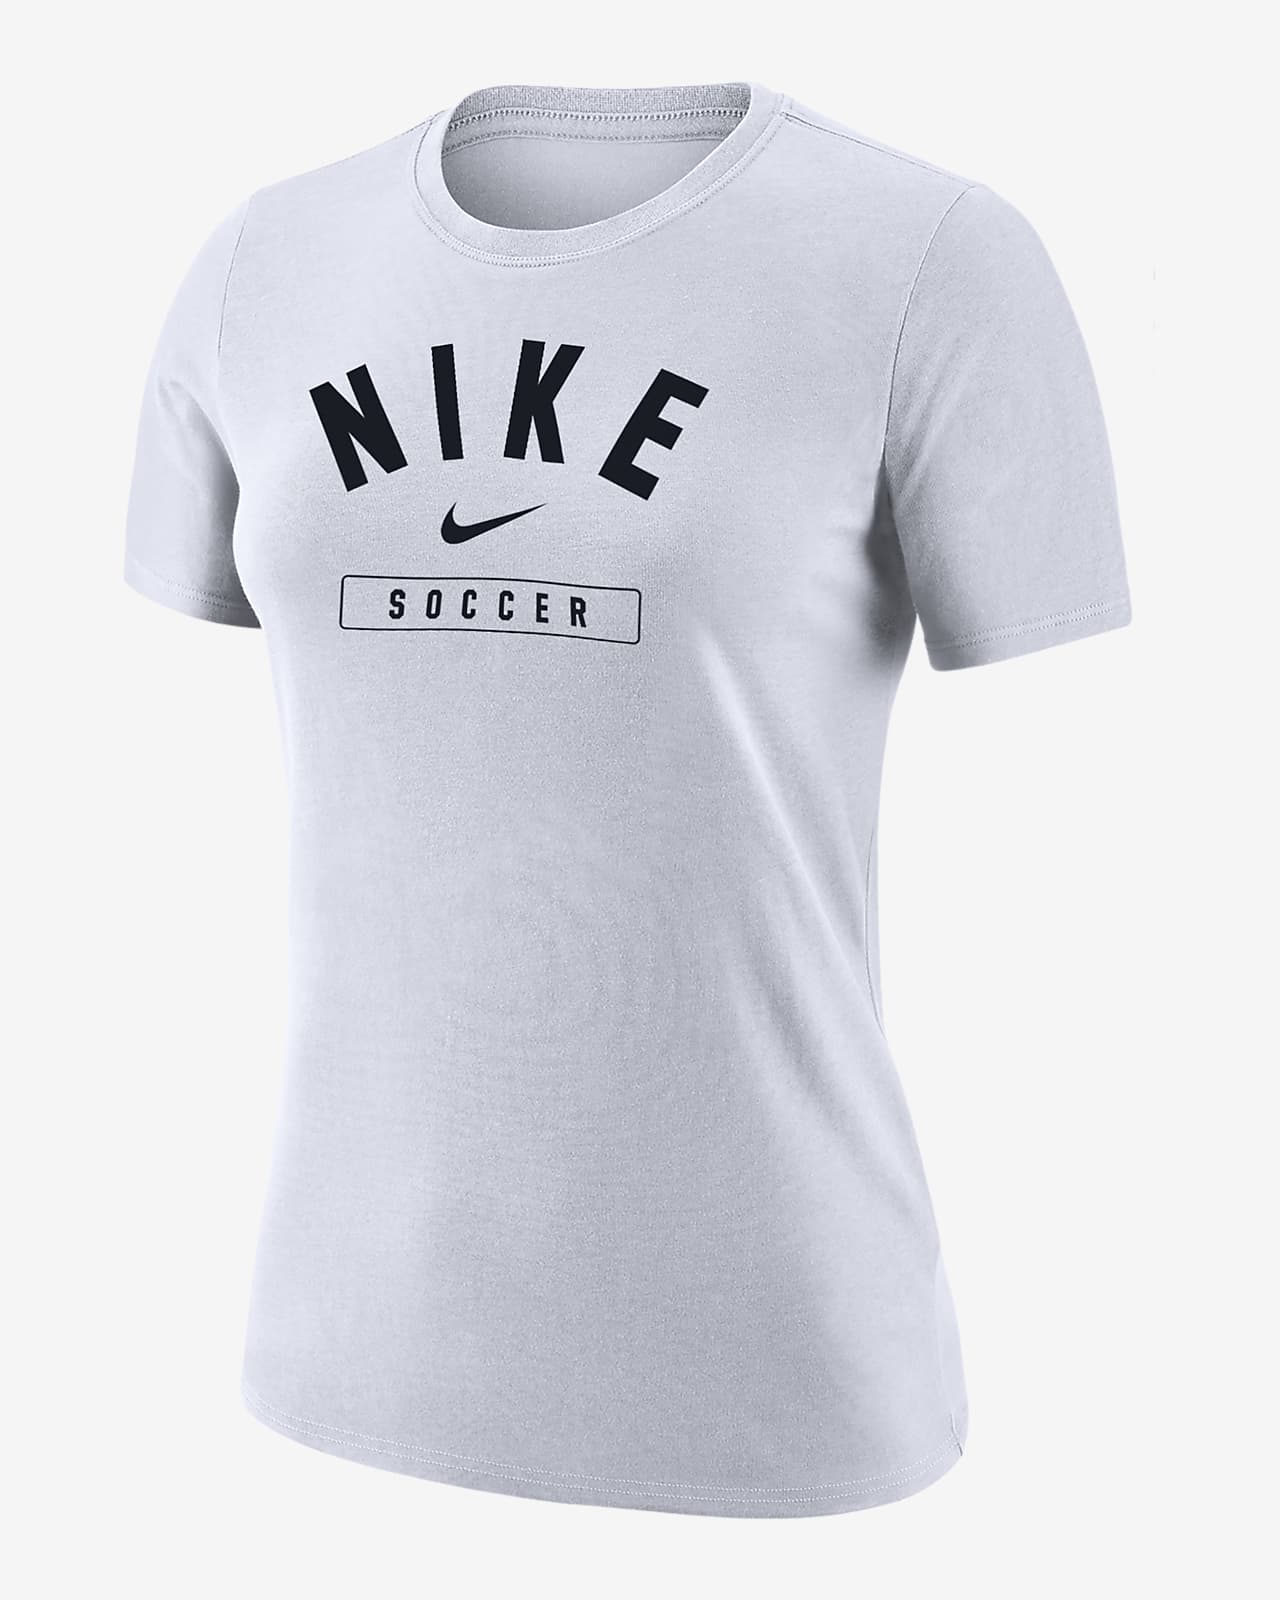 Nike Swoosh Women's Soccer T-Shirt